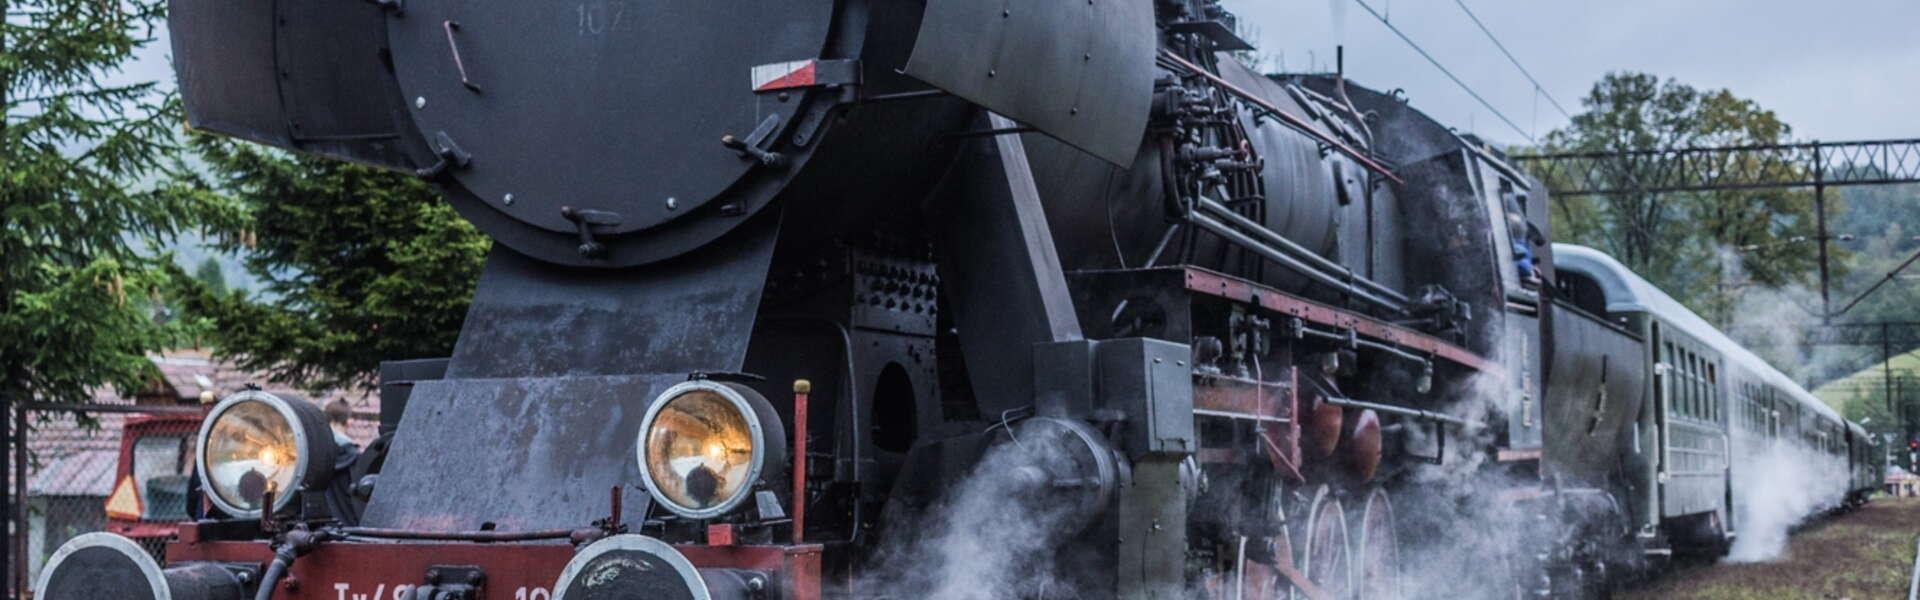 Zabytkowa lokomotywa parowa